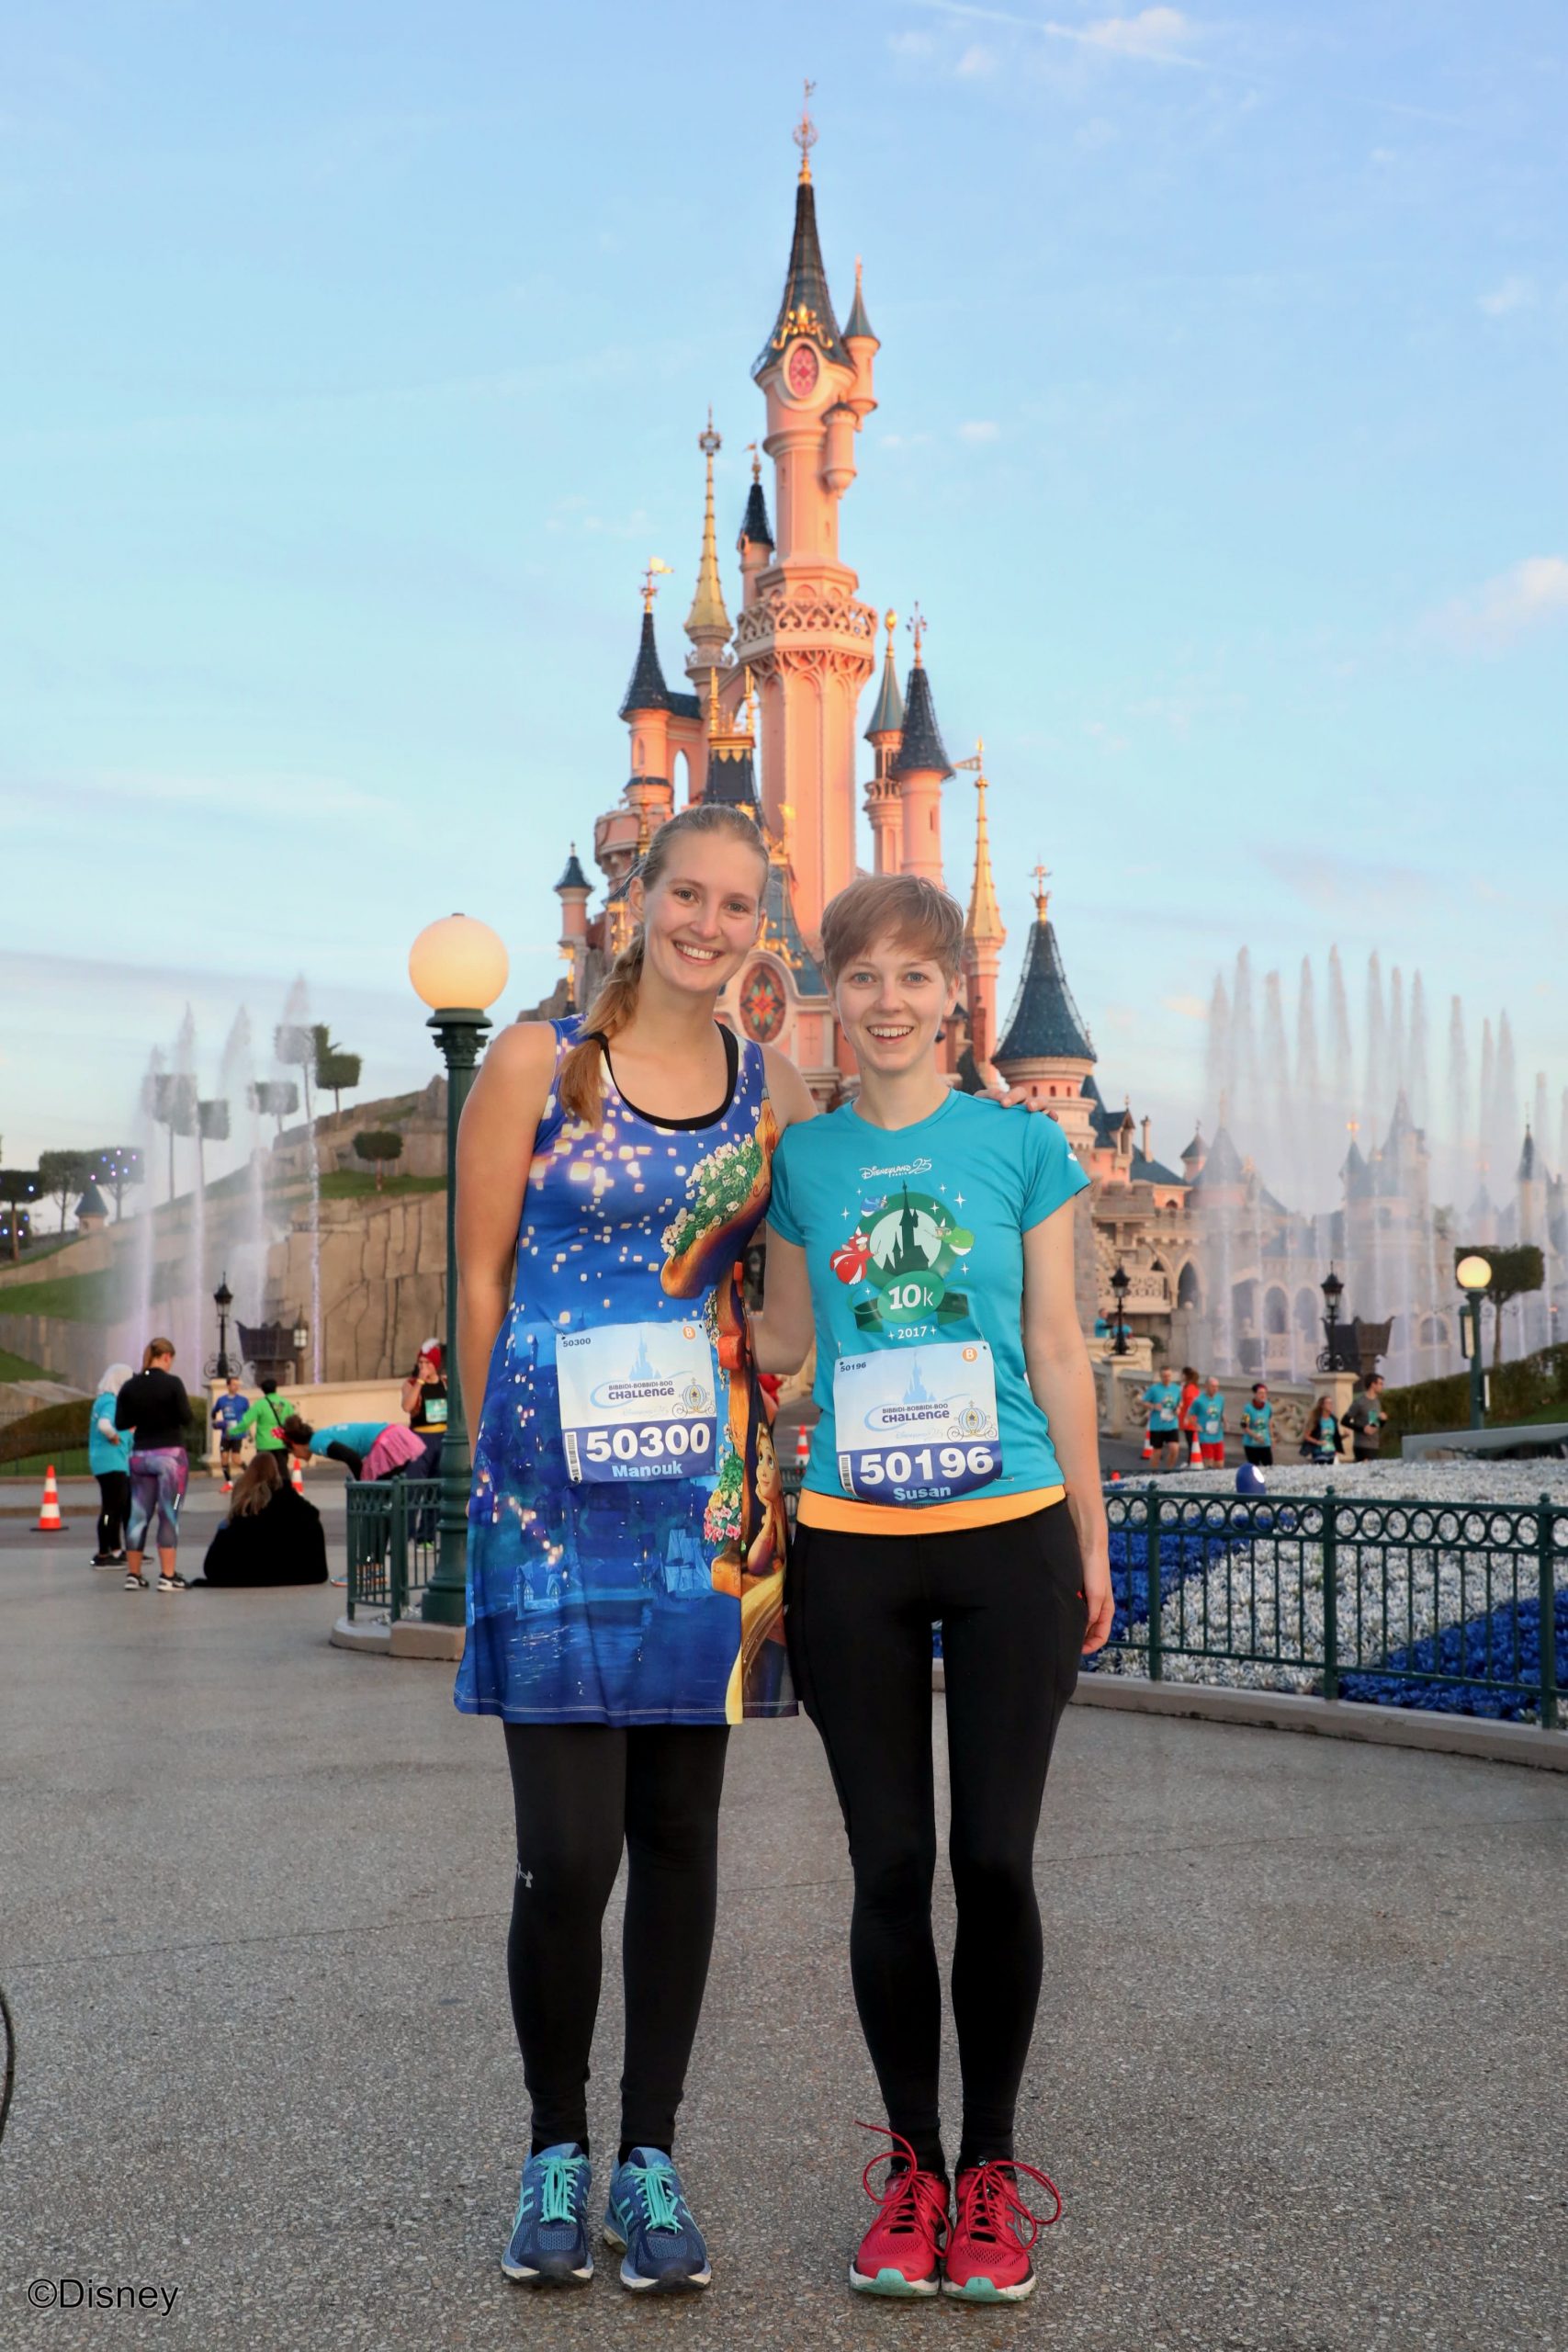 Op de foto met Sleeping Beauty castle tijdens het hardlopen in Disneyland Paris